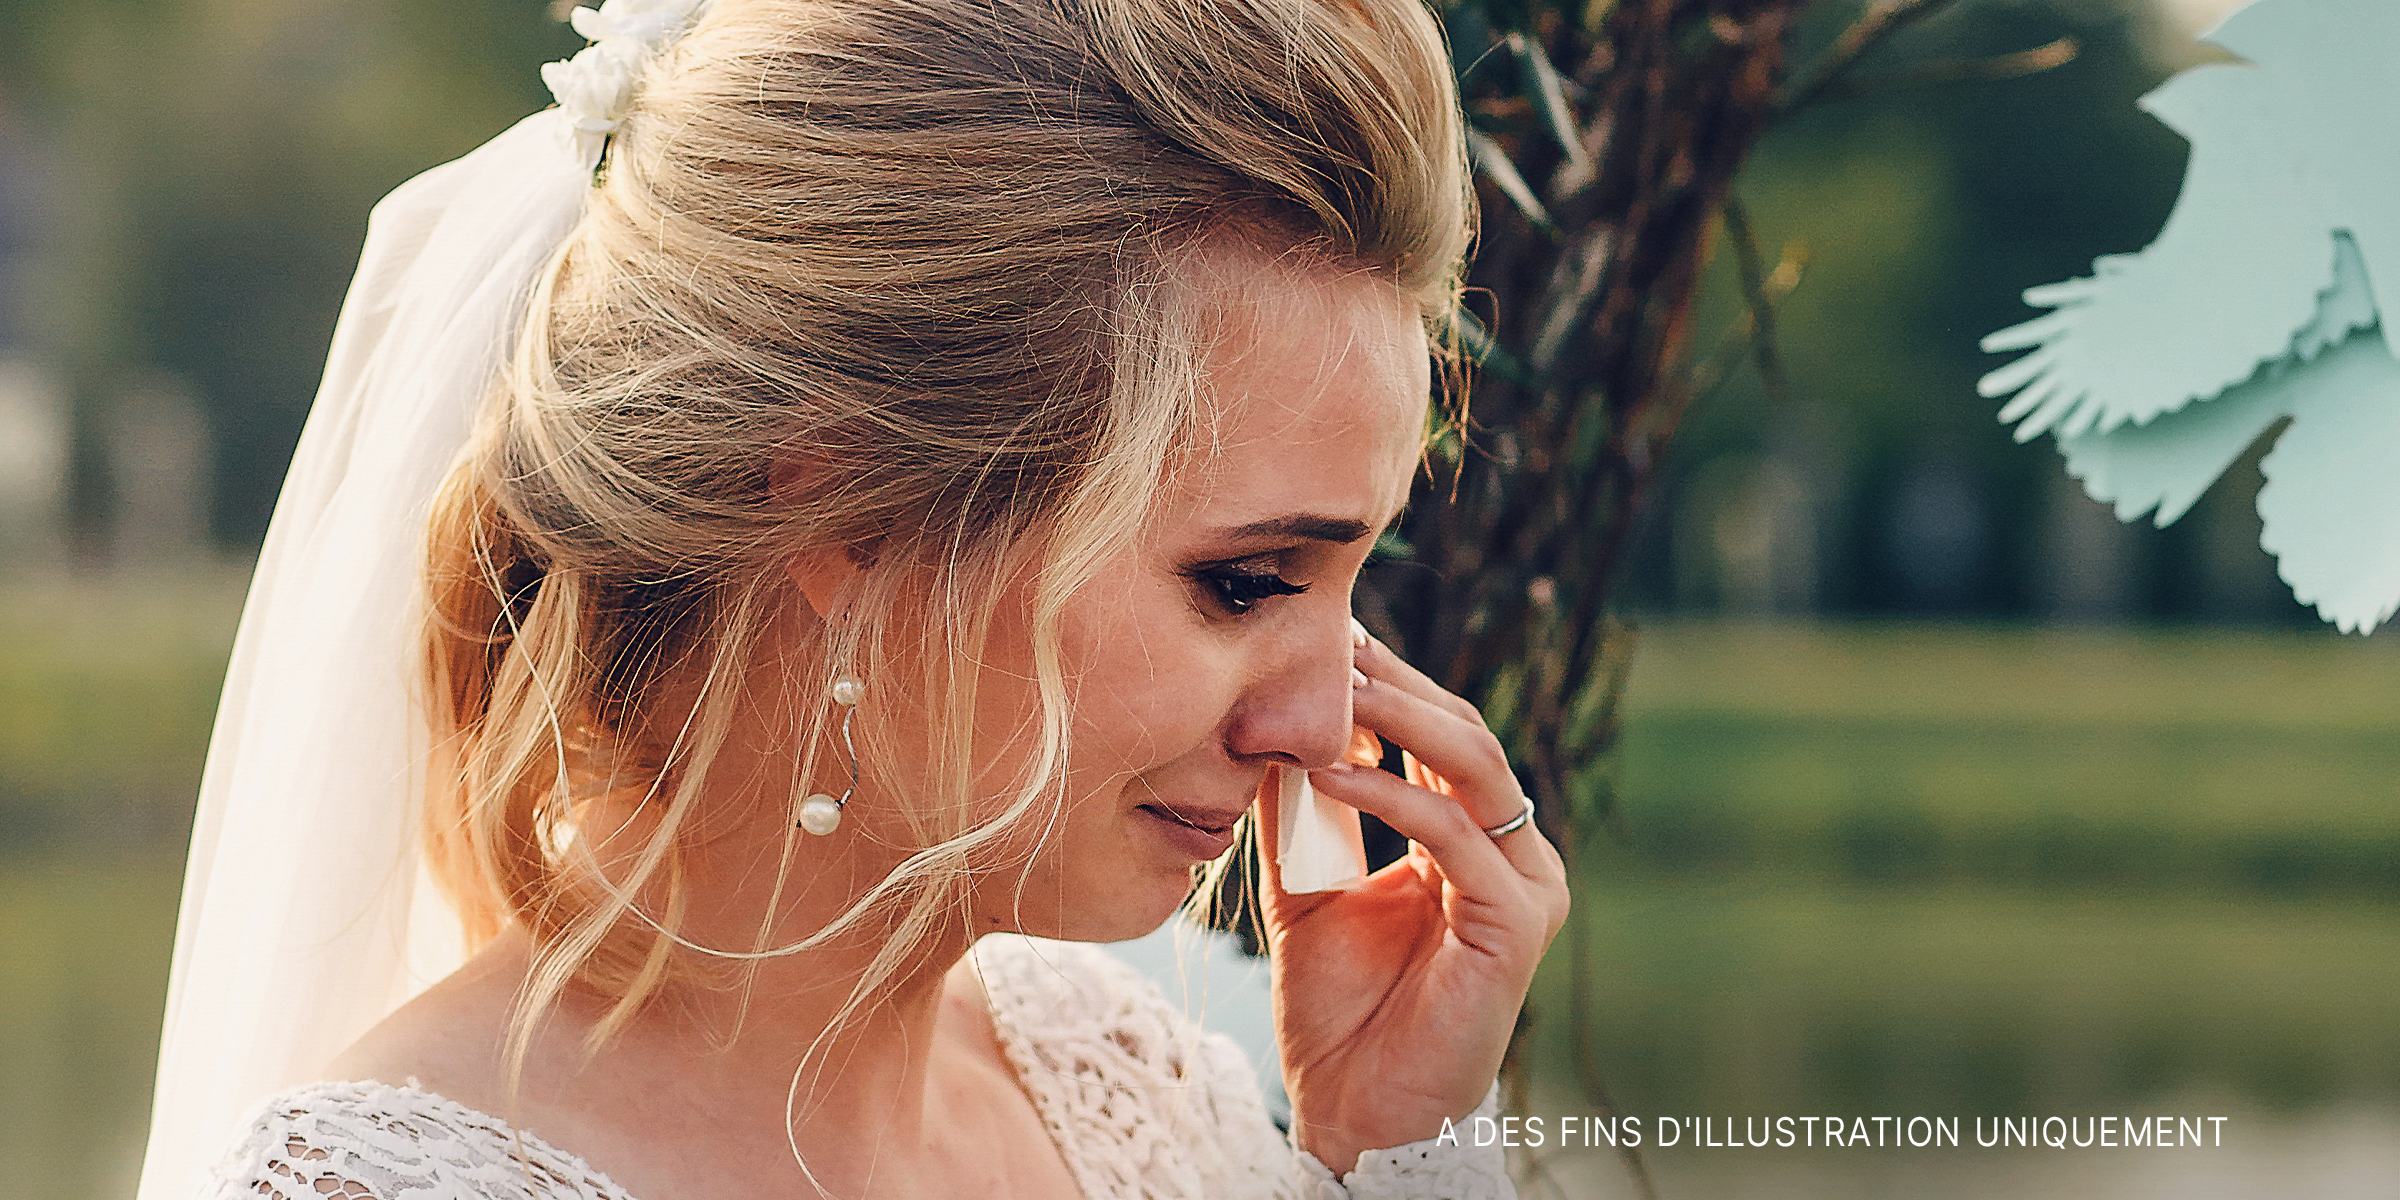 Une femme qui pleure le jour de son mariage | Source : Shutterstock